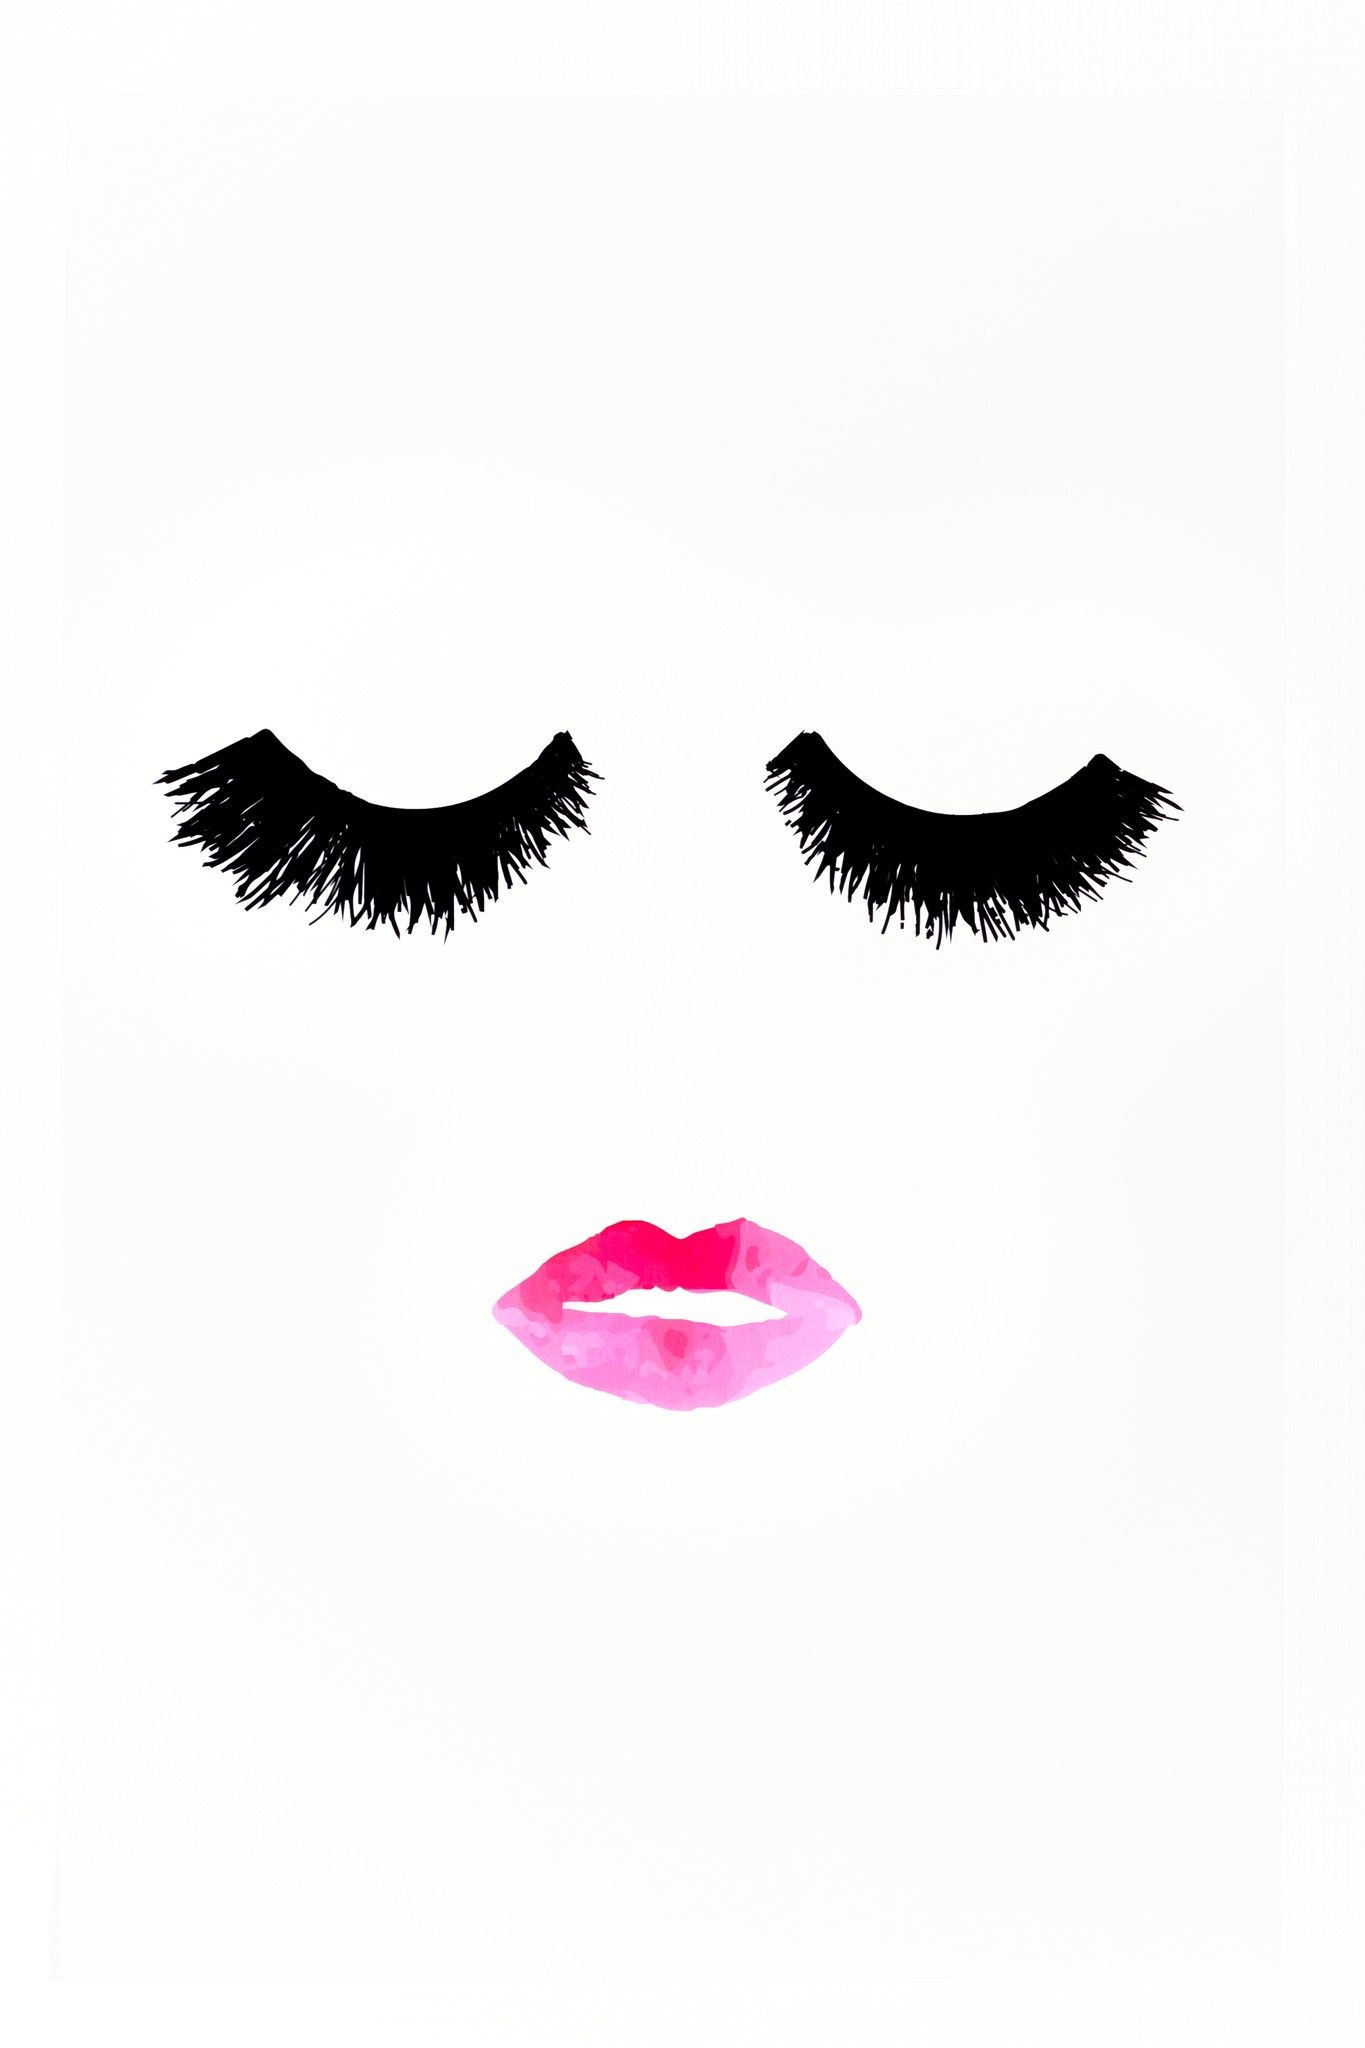 メイク壁紙tumblr,まつげ,化粧品,眉,眼,リップ